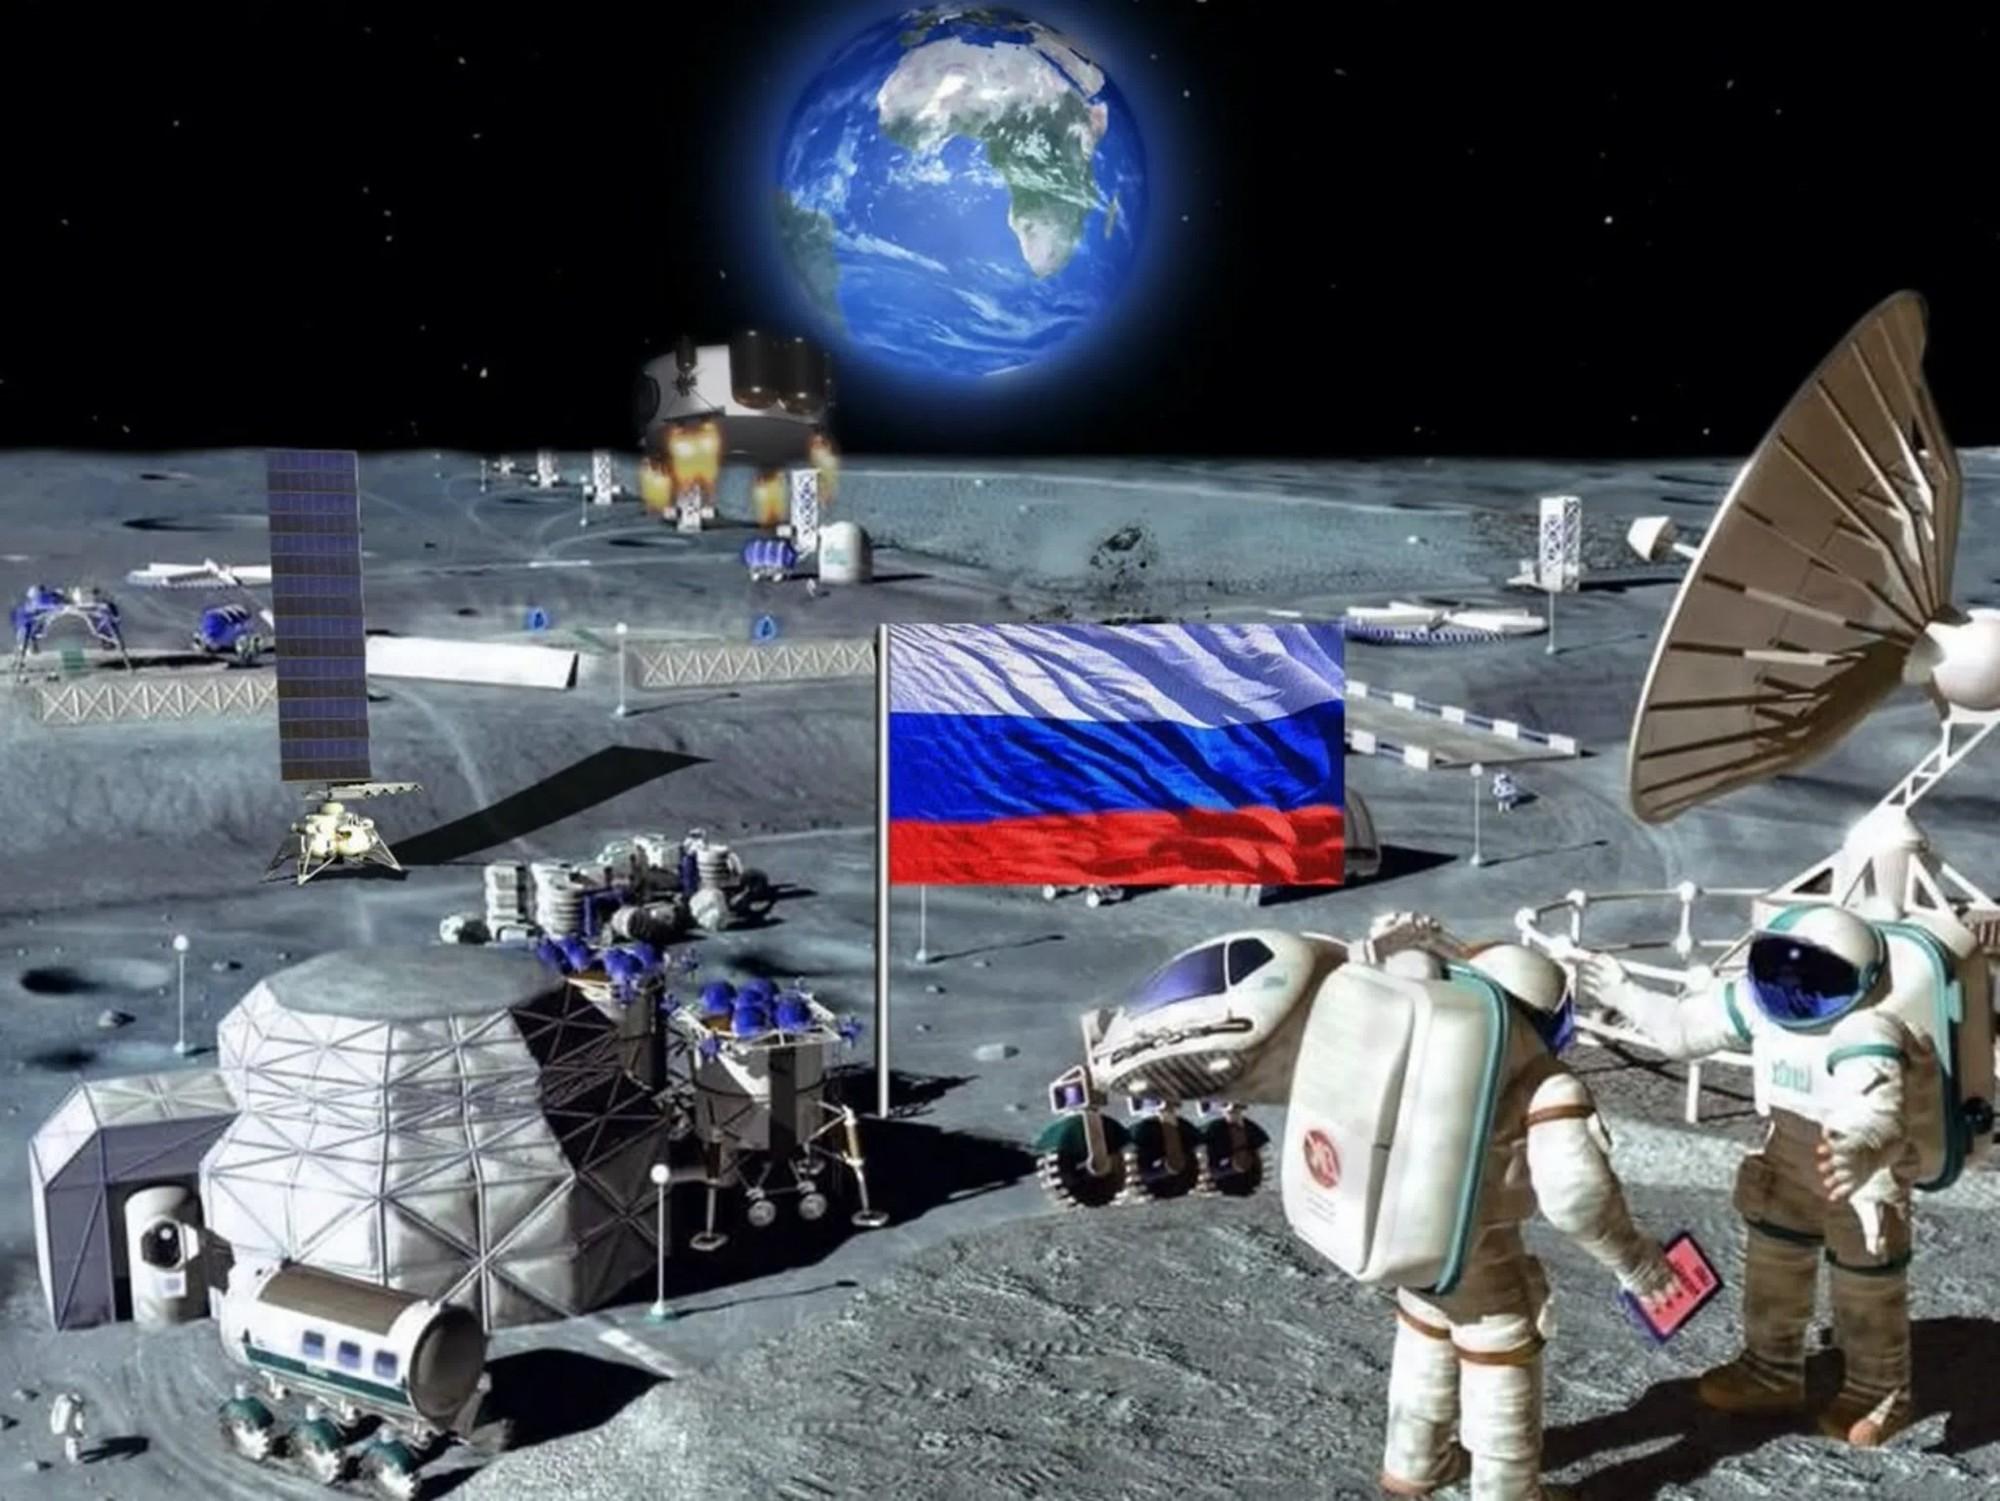 Лунная база 2020. Проект лунной базы «patron Moon». Лунная станция Роскосмос проект. Лунная база России 2020. Колонизация Луны.